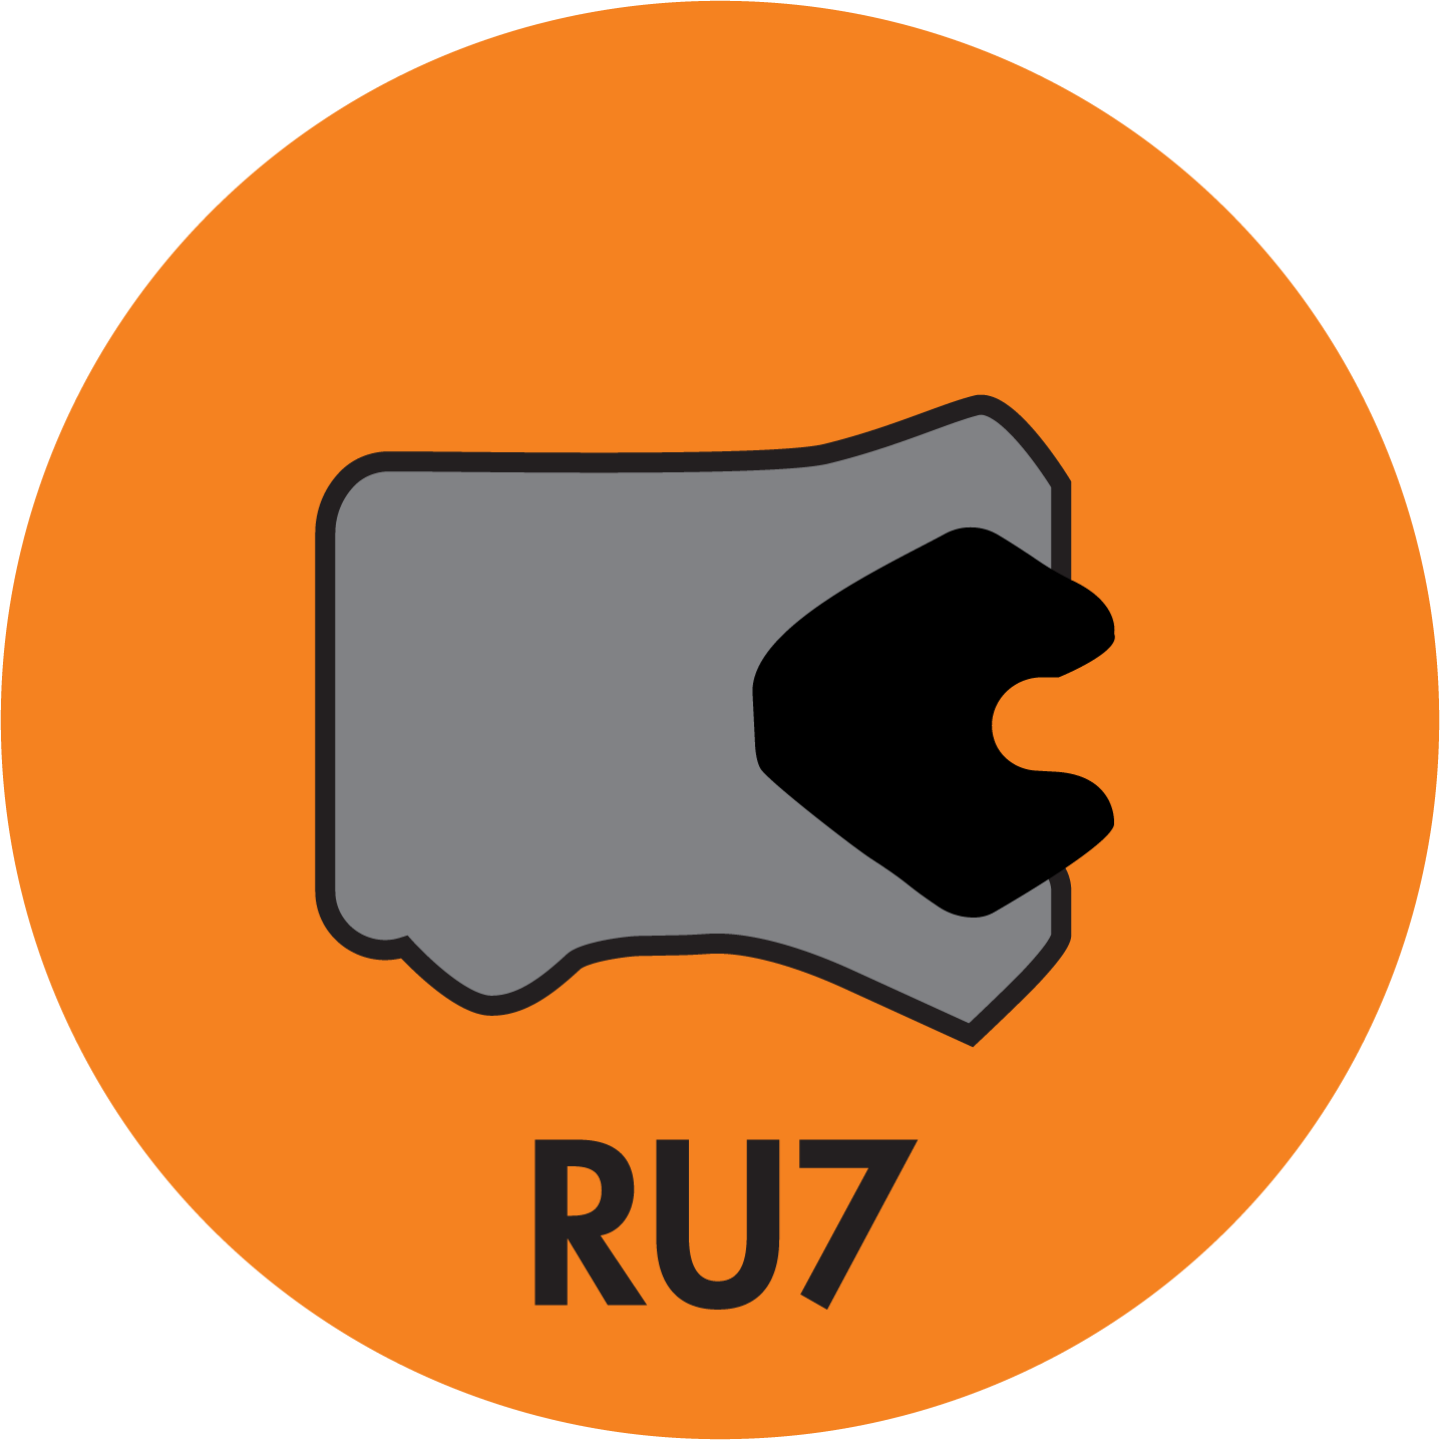 RU7 TWIN LIP ROD (LOADED) U-CUP (AU+NBR) - RU7-18701375-312-P92E Image 1